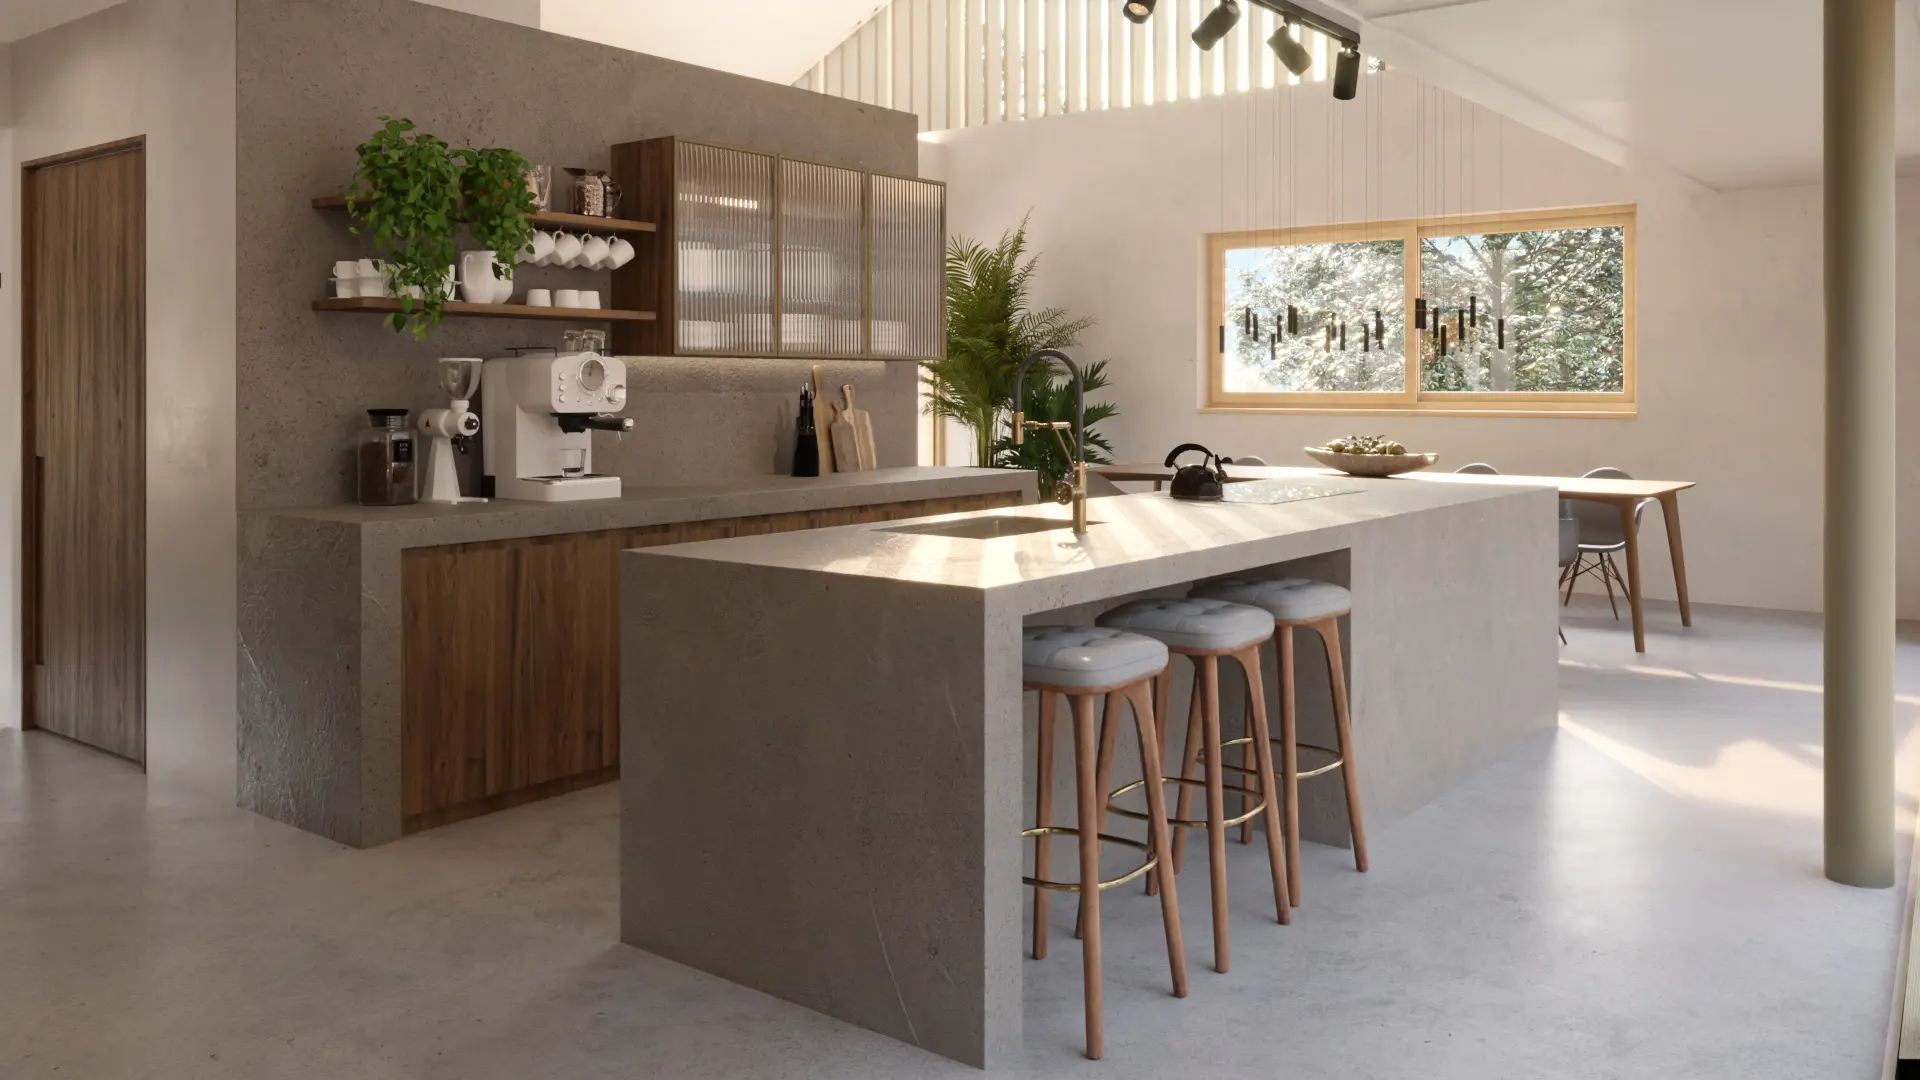 innenvisualisierung küche betonstyle von archisnek